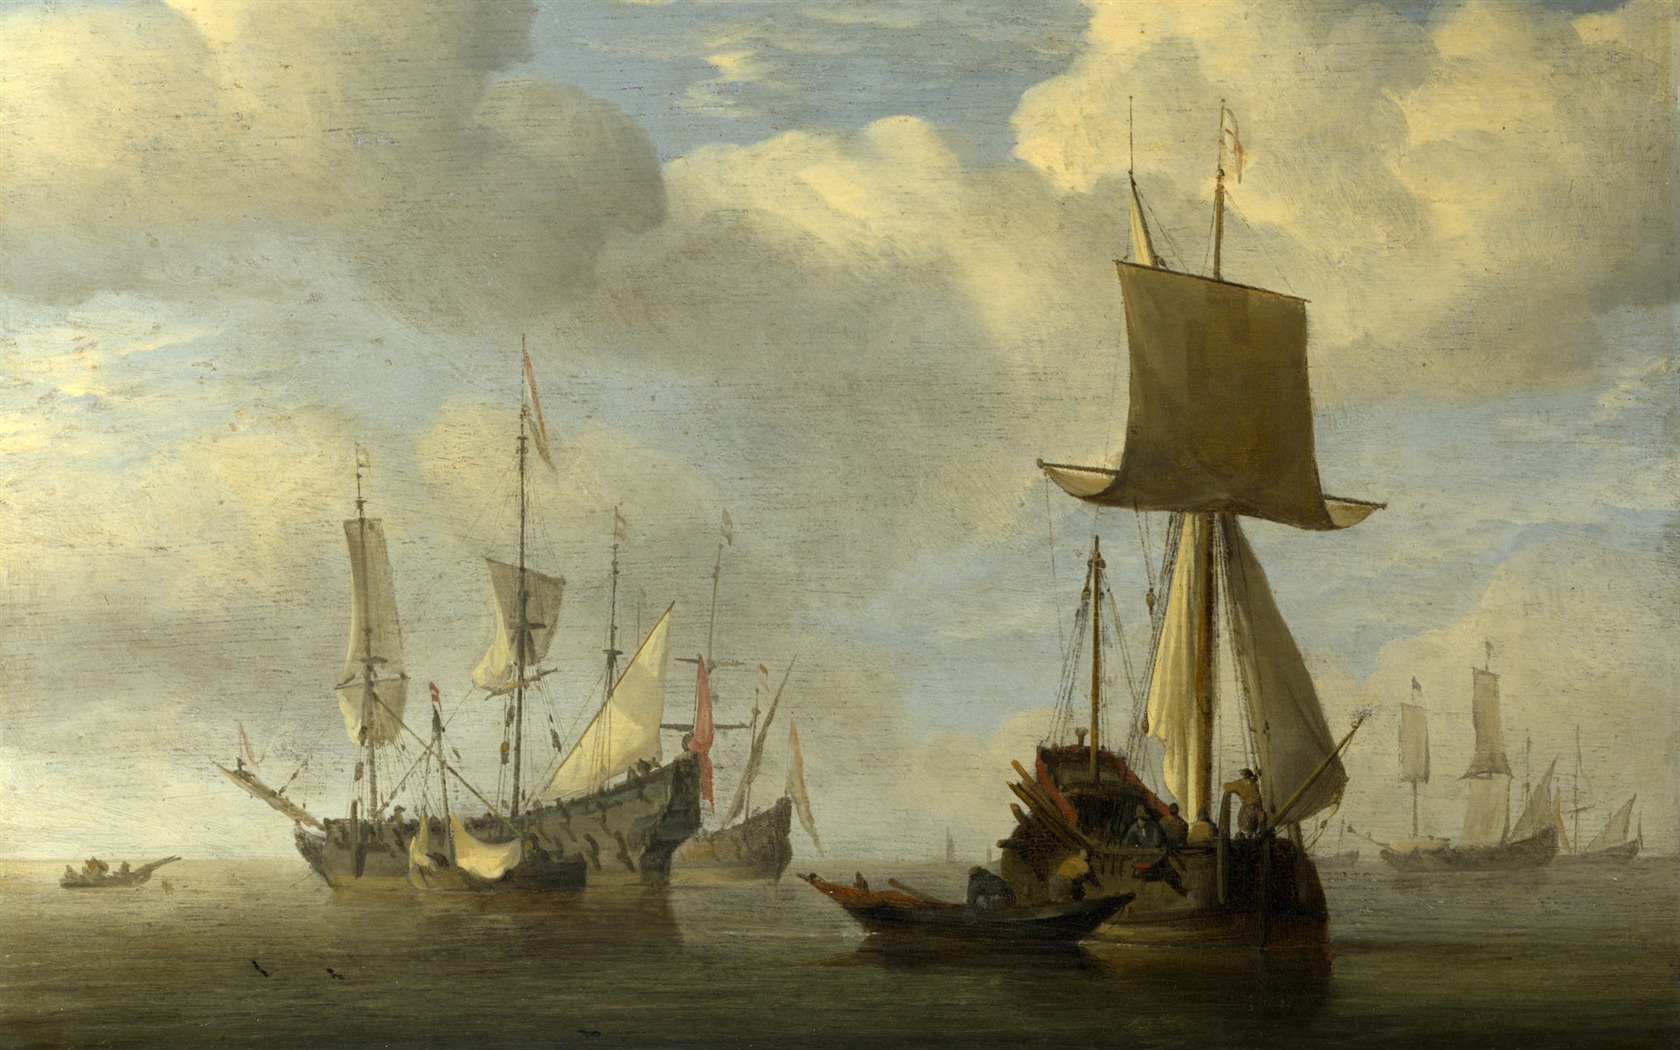 伦敦画廊帆船 壁纸(二)5 - 1680x1050